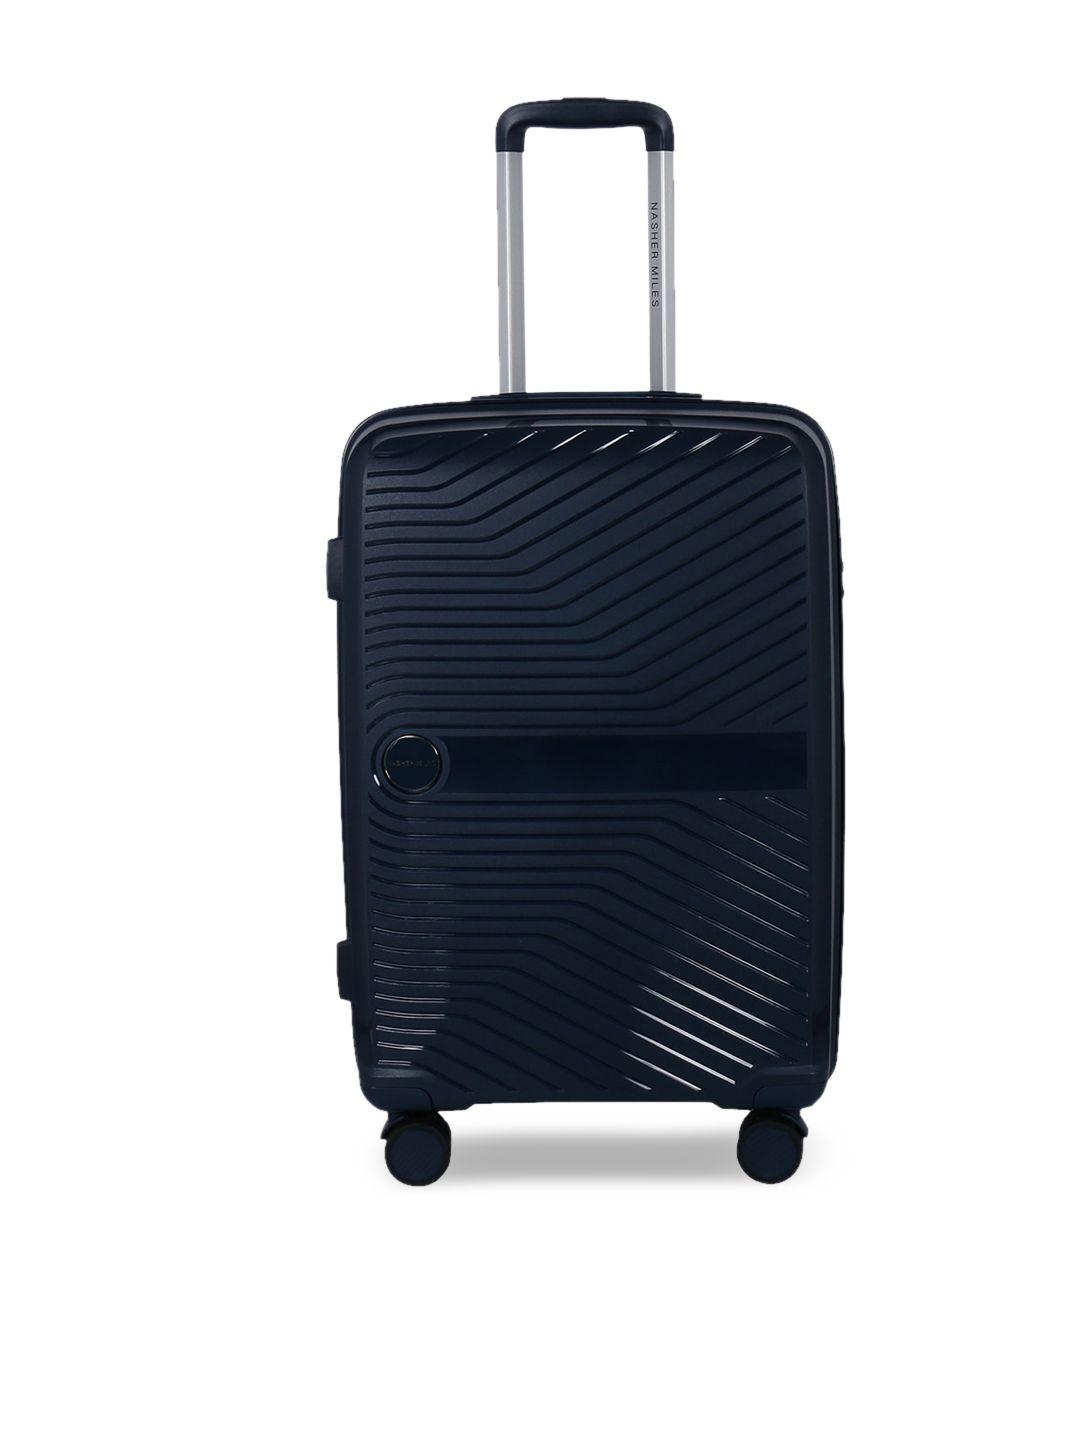 nasher miles bruges solid hard medium trolley suitcase - 60 cm